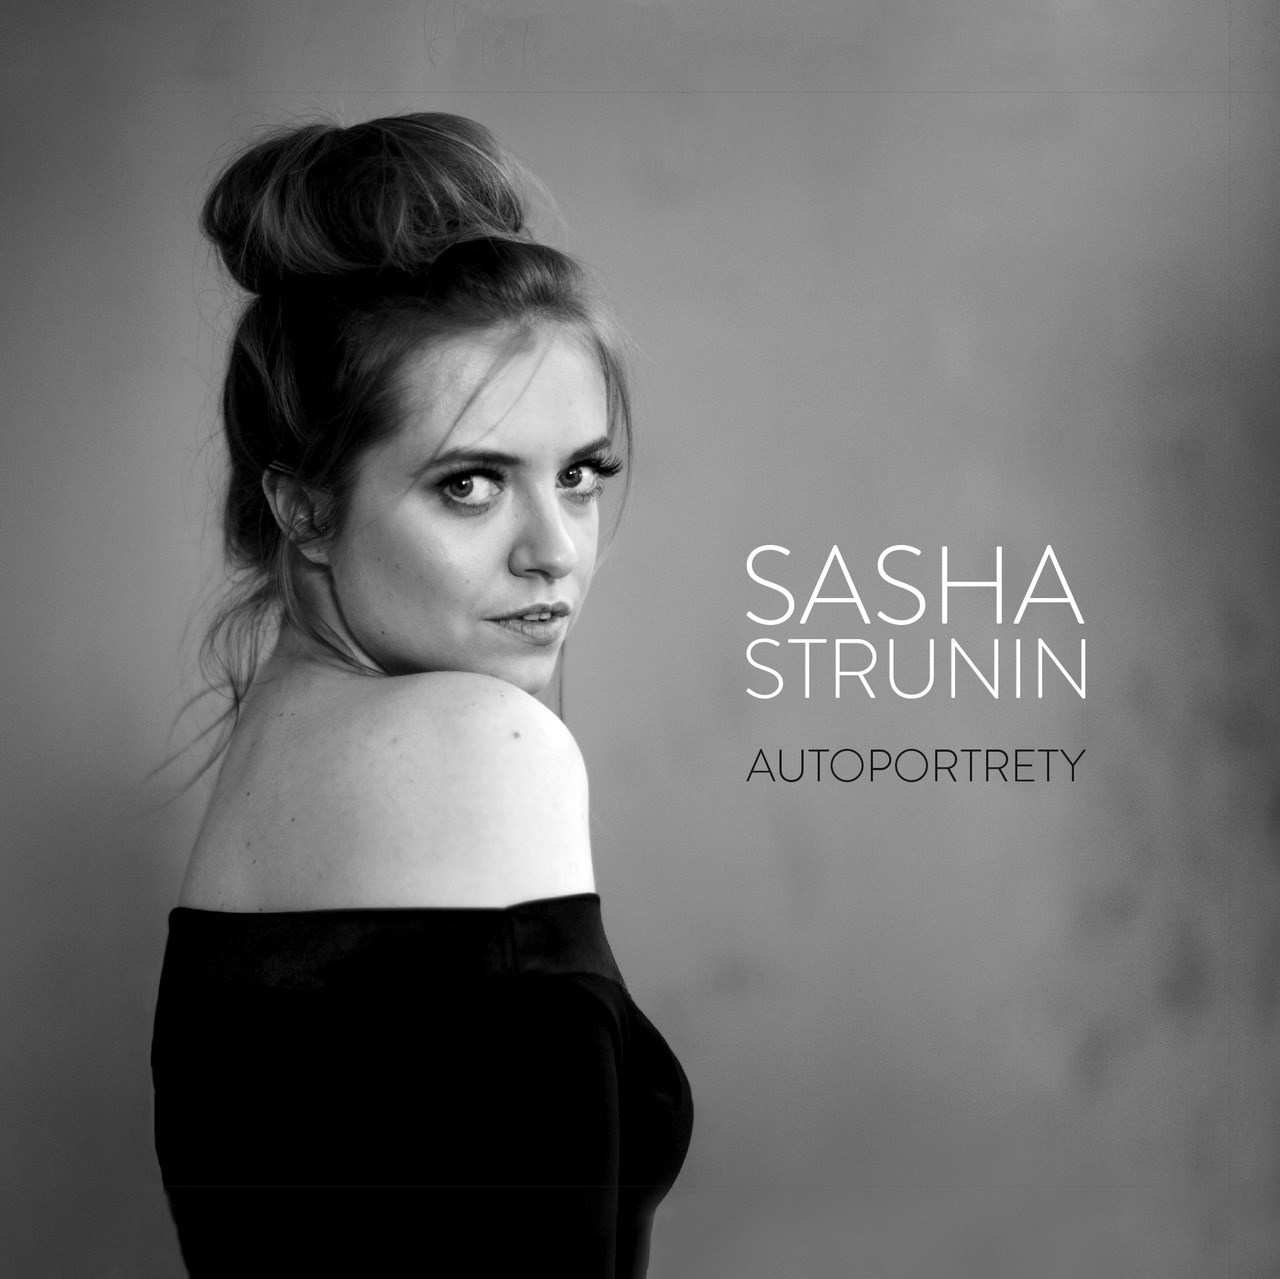 SashaStrunin_Autoportrety.jpg